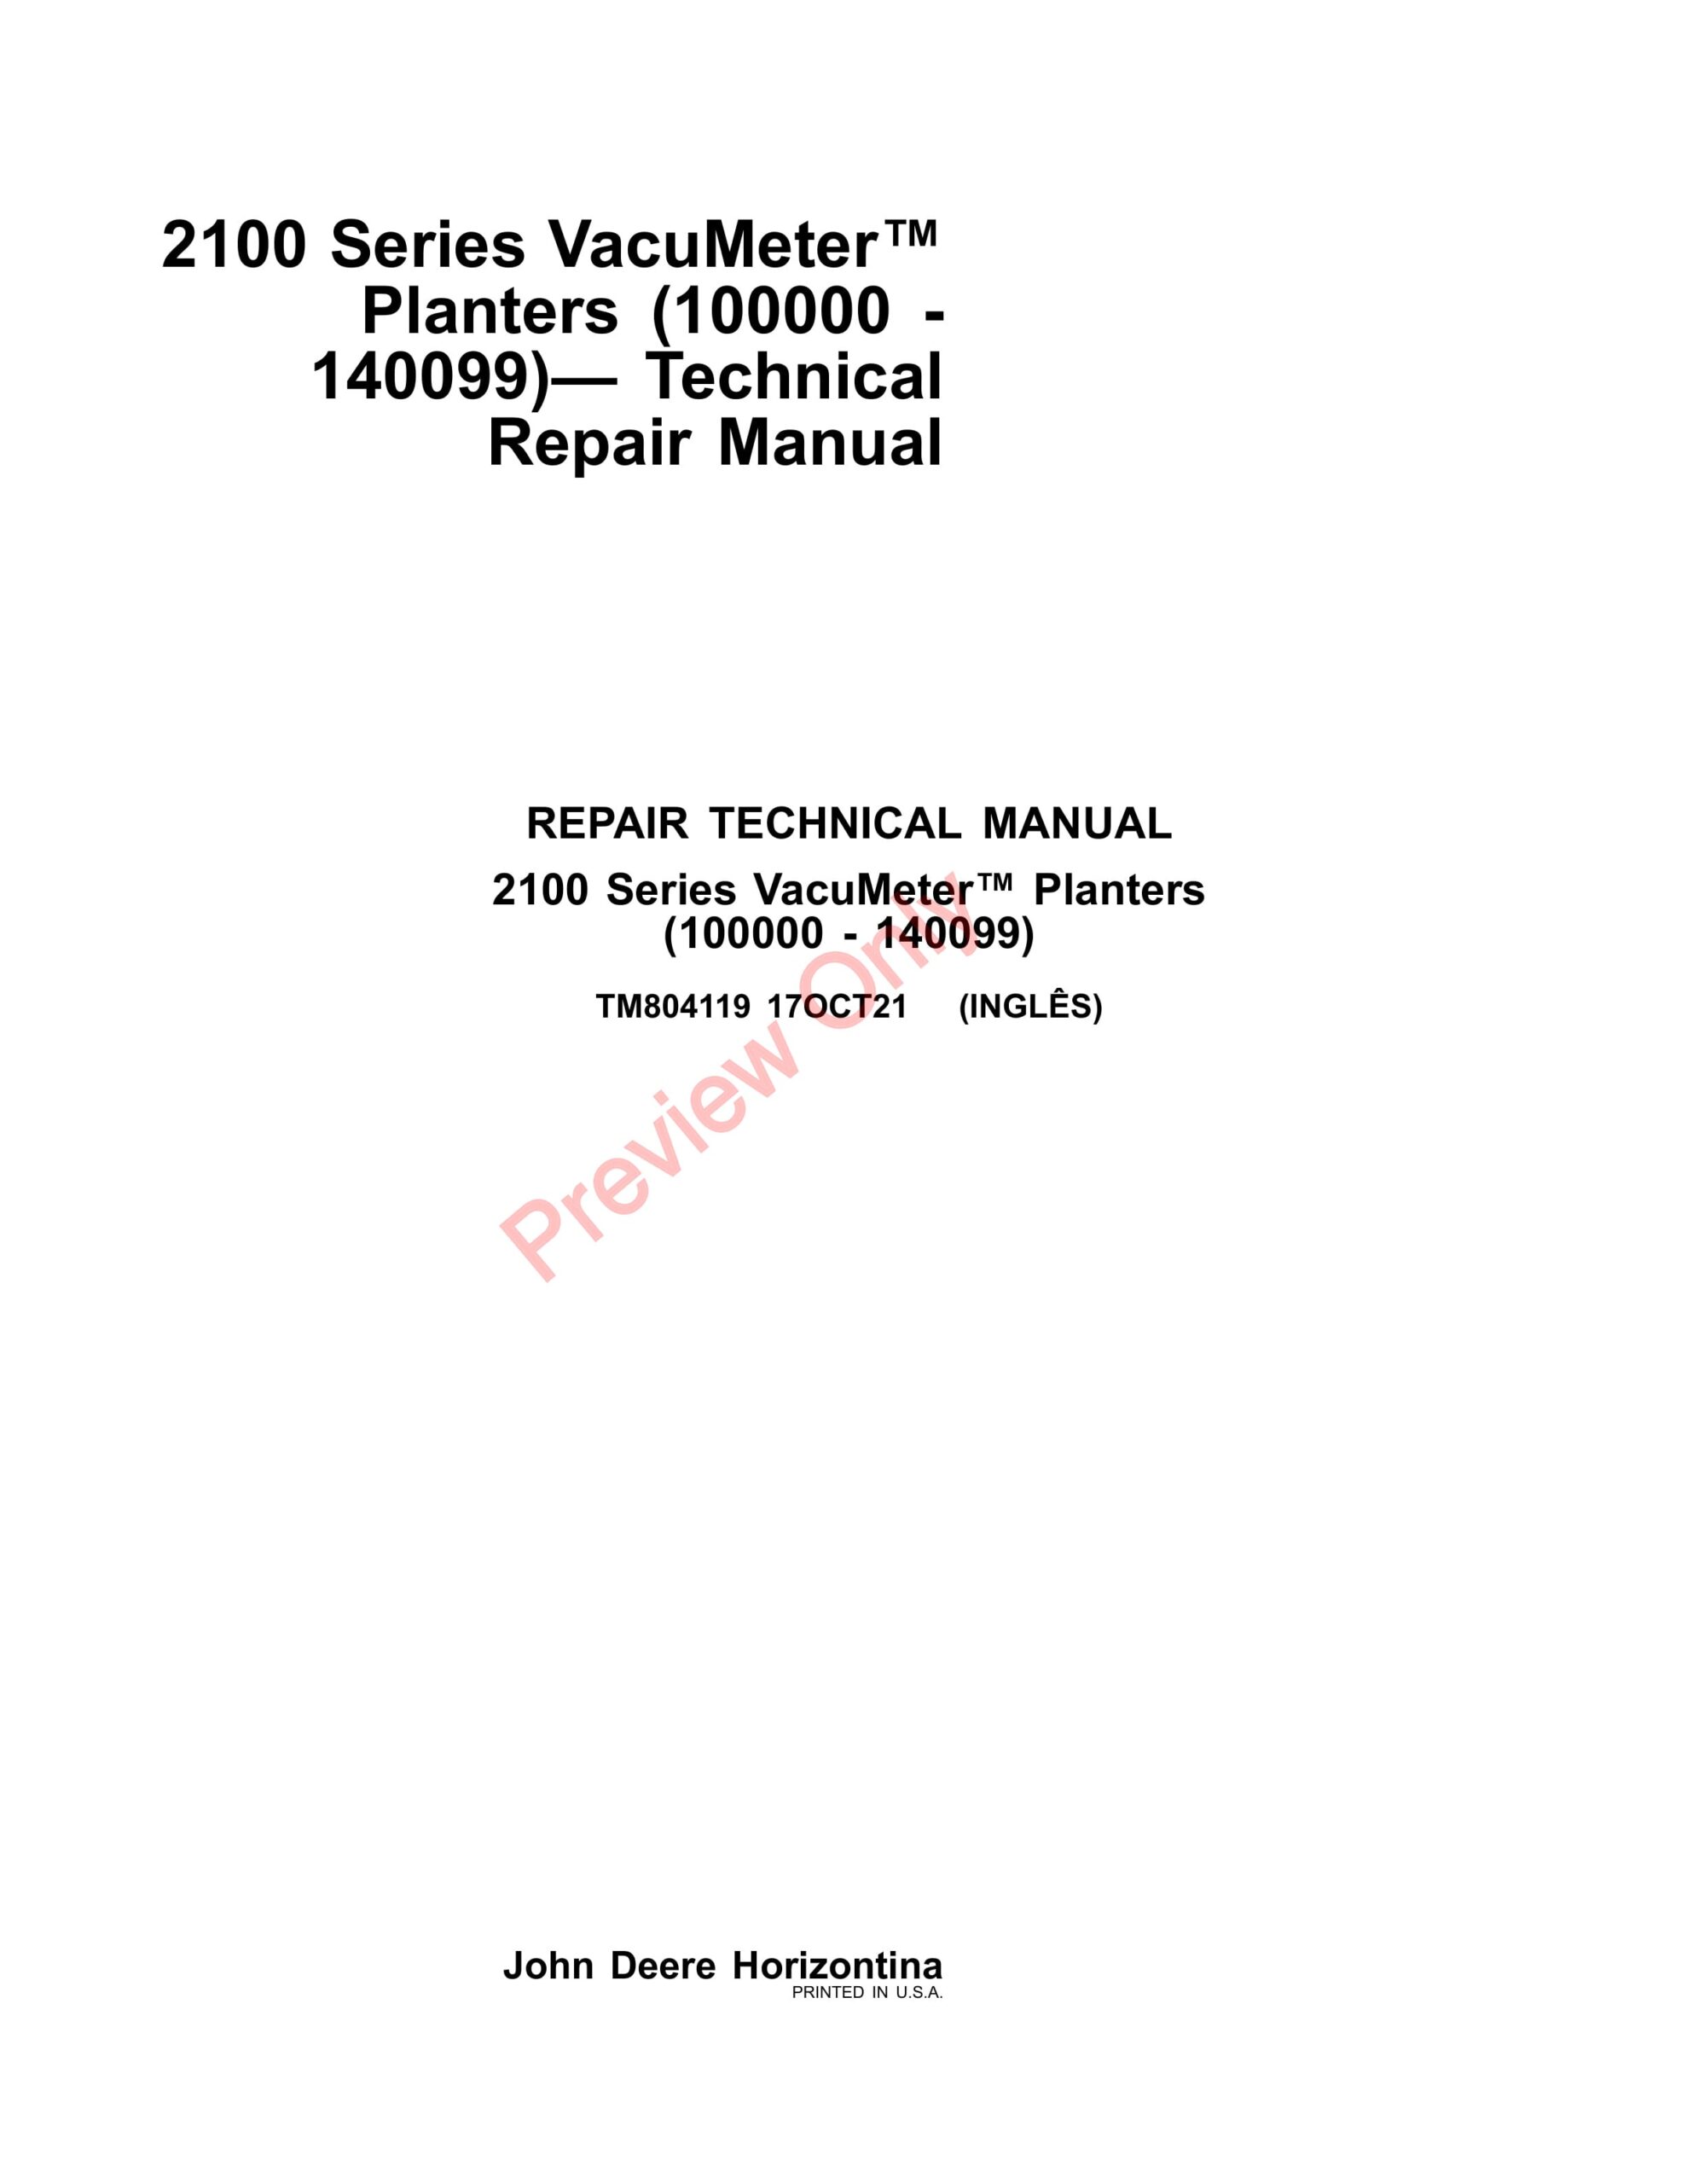 John Deere 2100 Series VacuMeter Planters (100000 – 140099) Repair Technical Manual TM804119 17OCT21-1